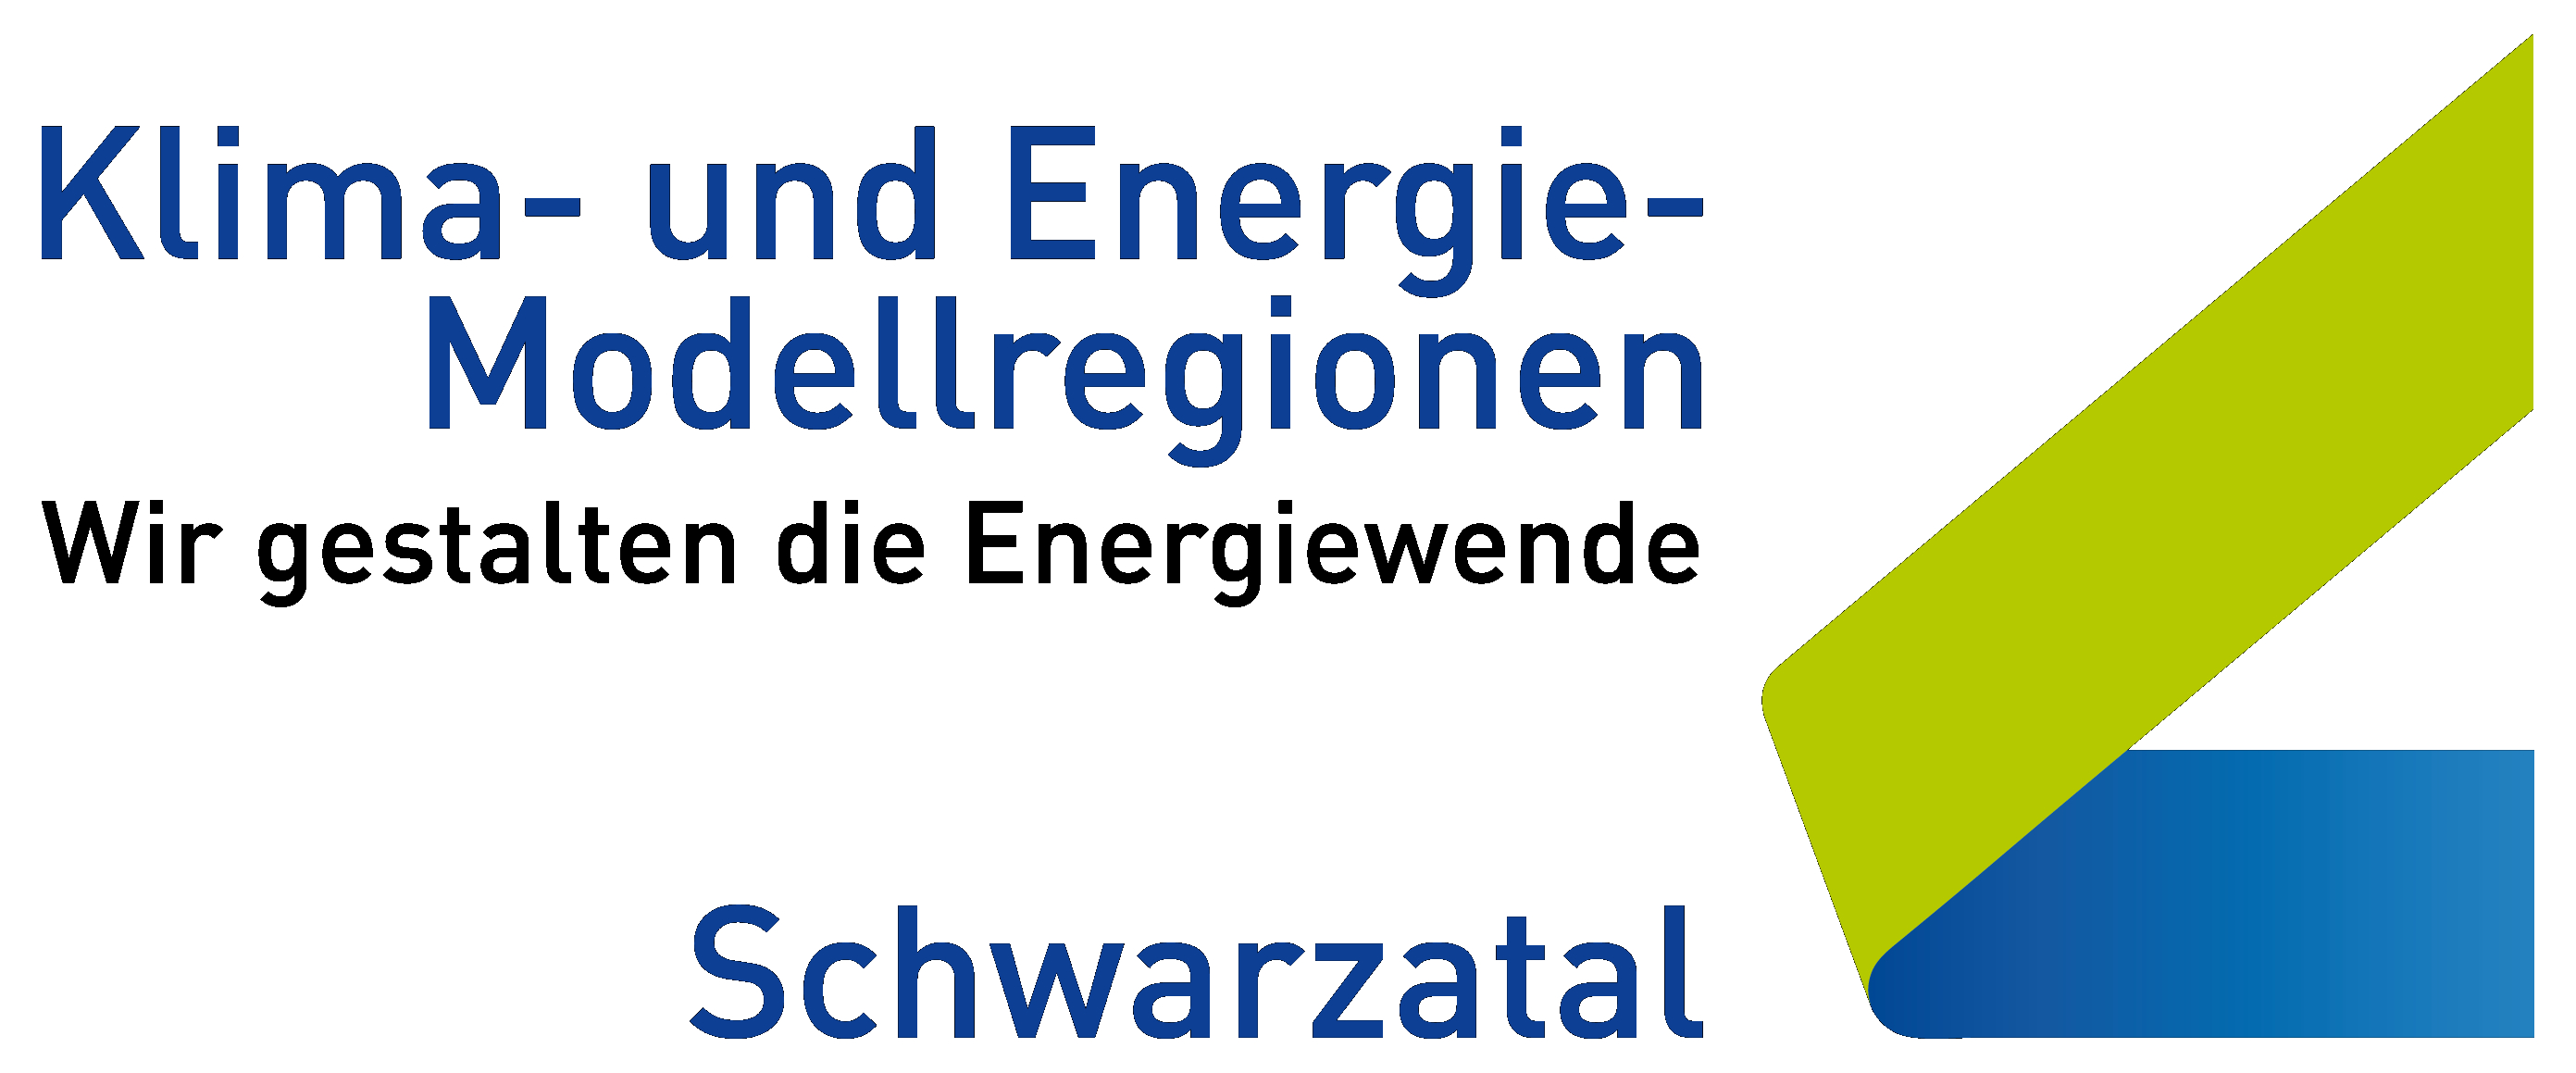 Klima- und Energiemodellregion (KEM) Schwarzatal Logo